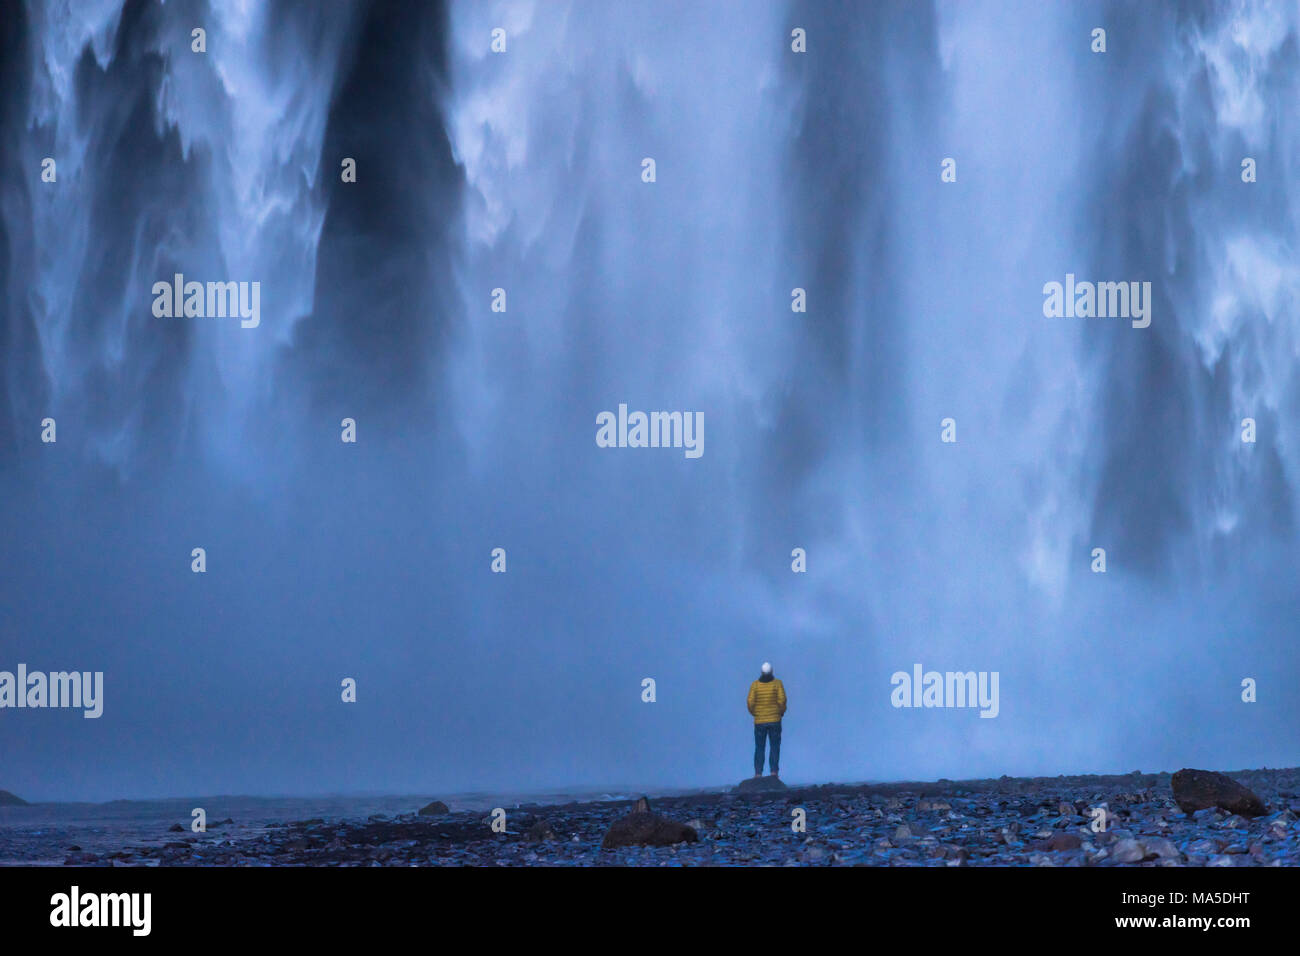 Europa, Nordeuropa, Island, Skógar, Person genießt die sensationelle Spektakel der Wassermassen an Skógafoss Stockfoto